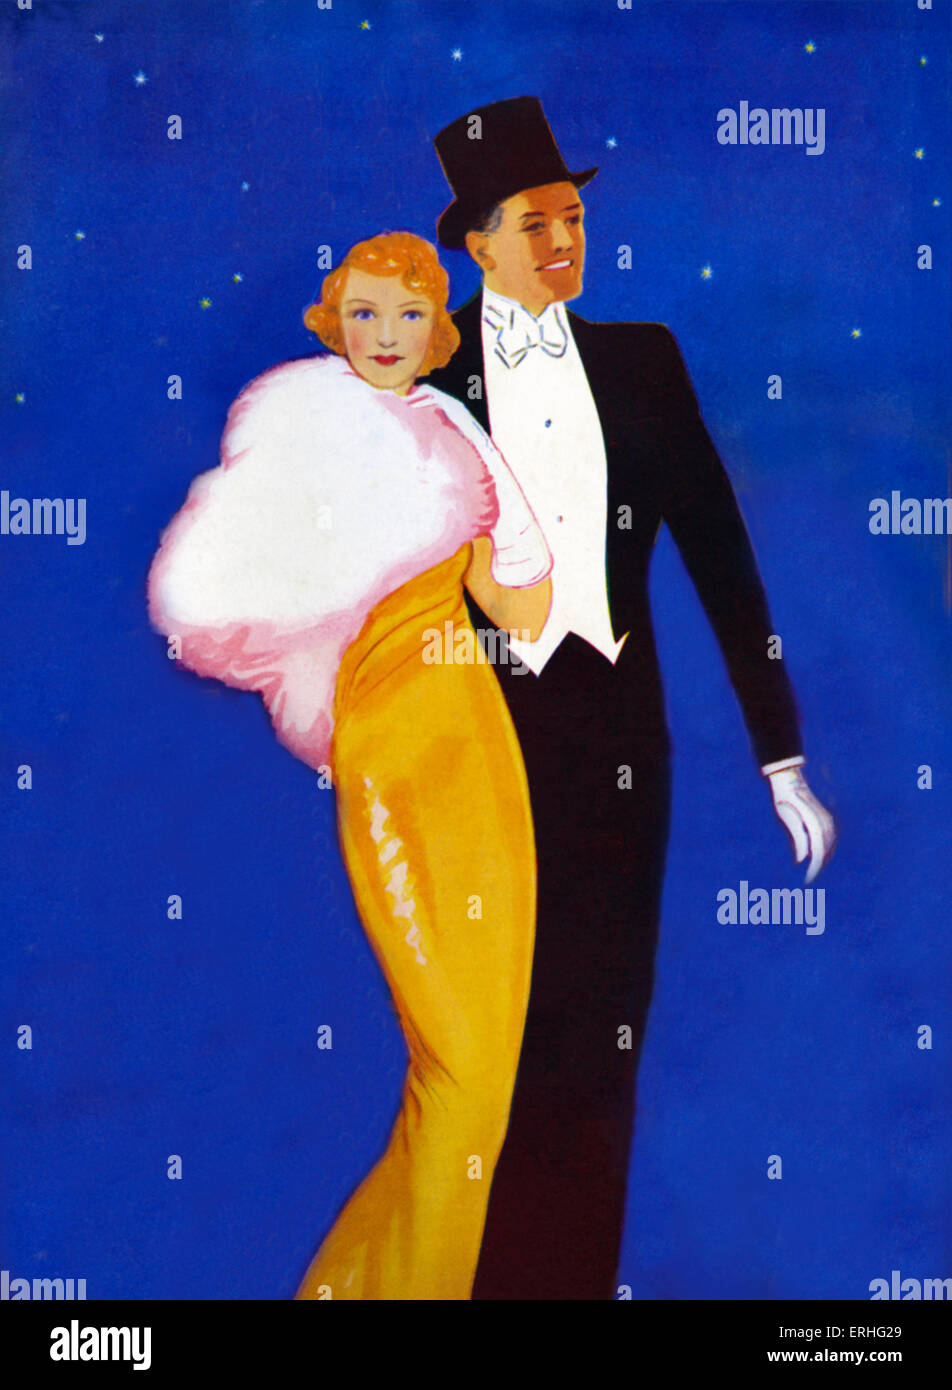 1930er Jahren paar im Abendkleid gehen in der Stadt. Zylinder, gelben Kleid mit weißem Pelz Umhang und Nachtblau Himmel mit Sternen. Weiße Handschuhe, Abendkleid. Stockfoto